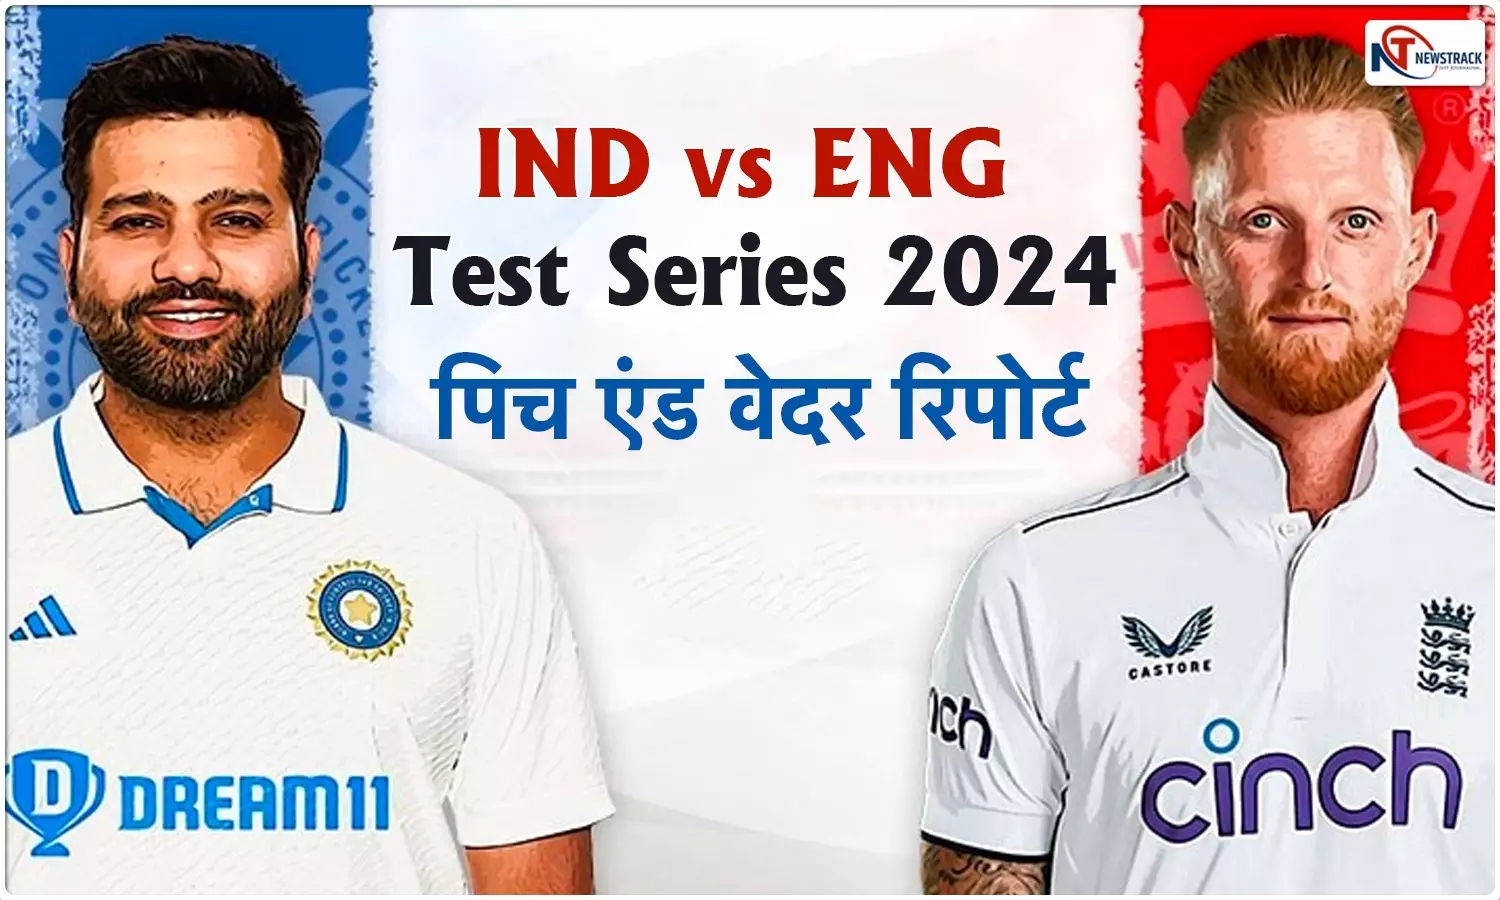 IND vs ENG 3rd Test